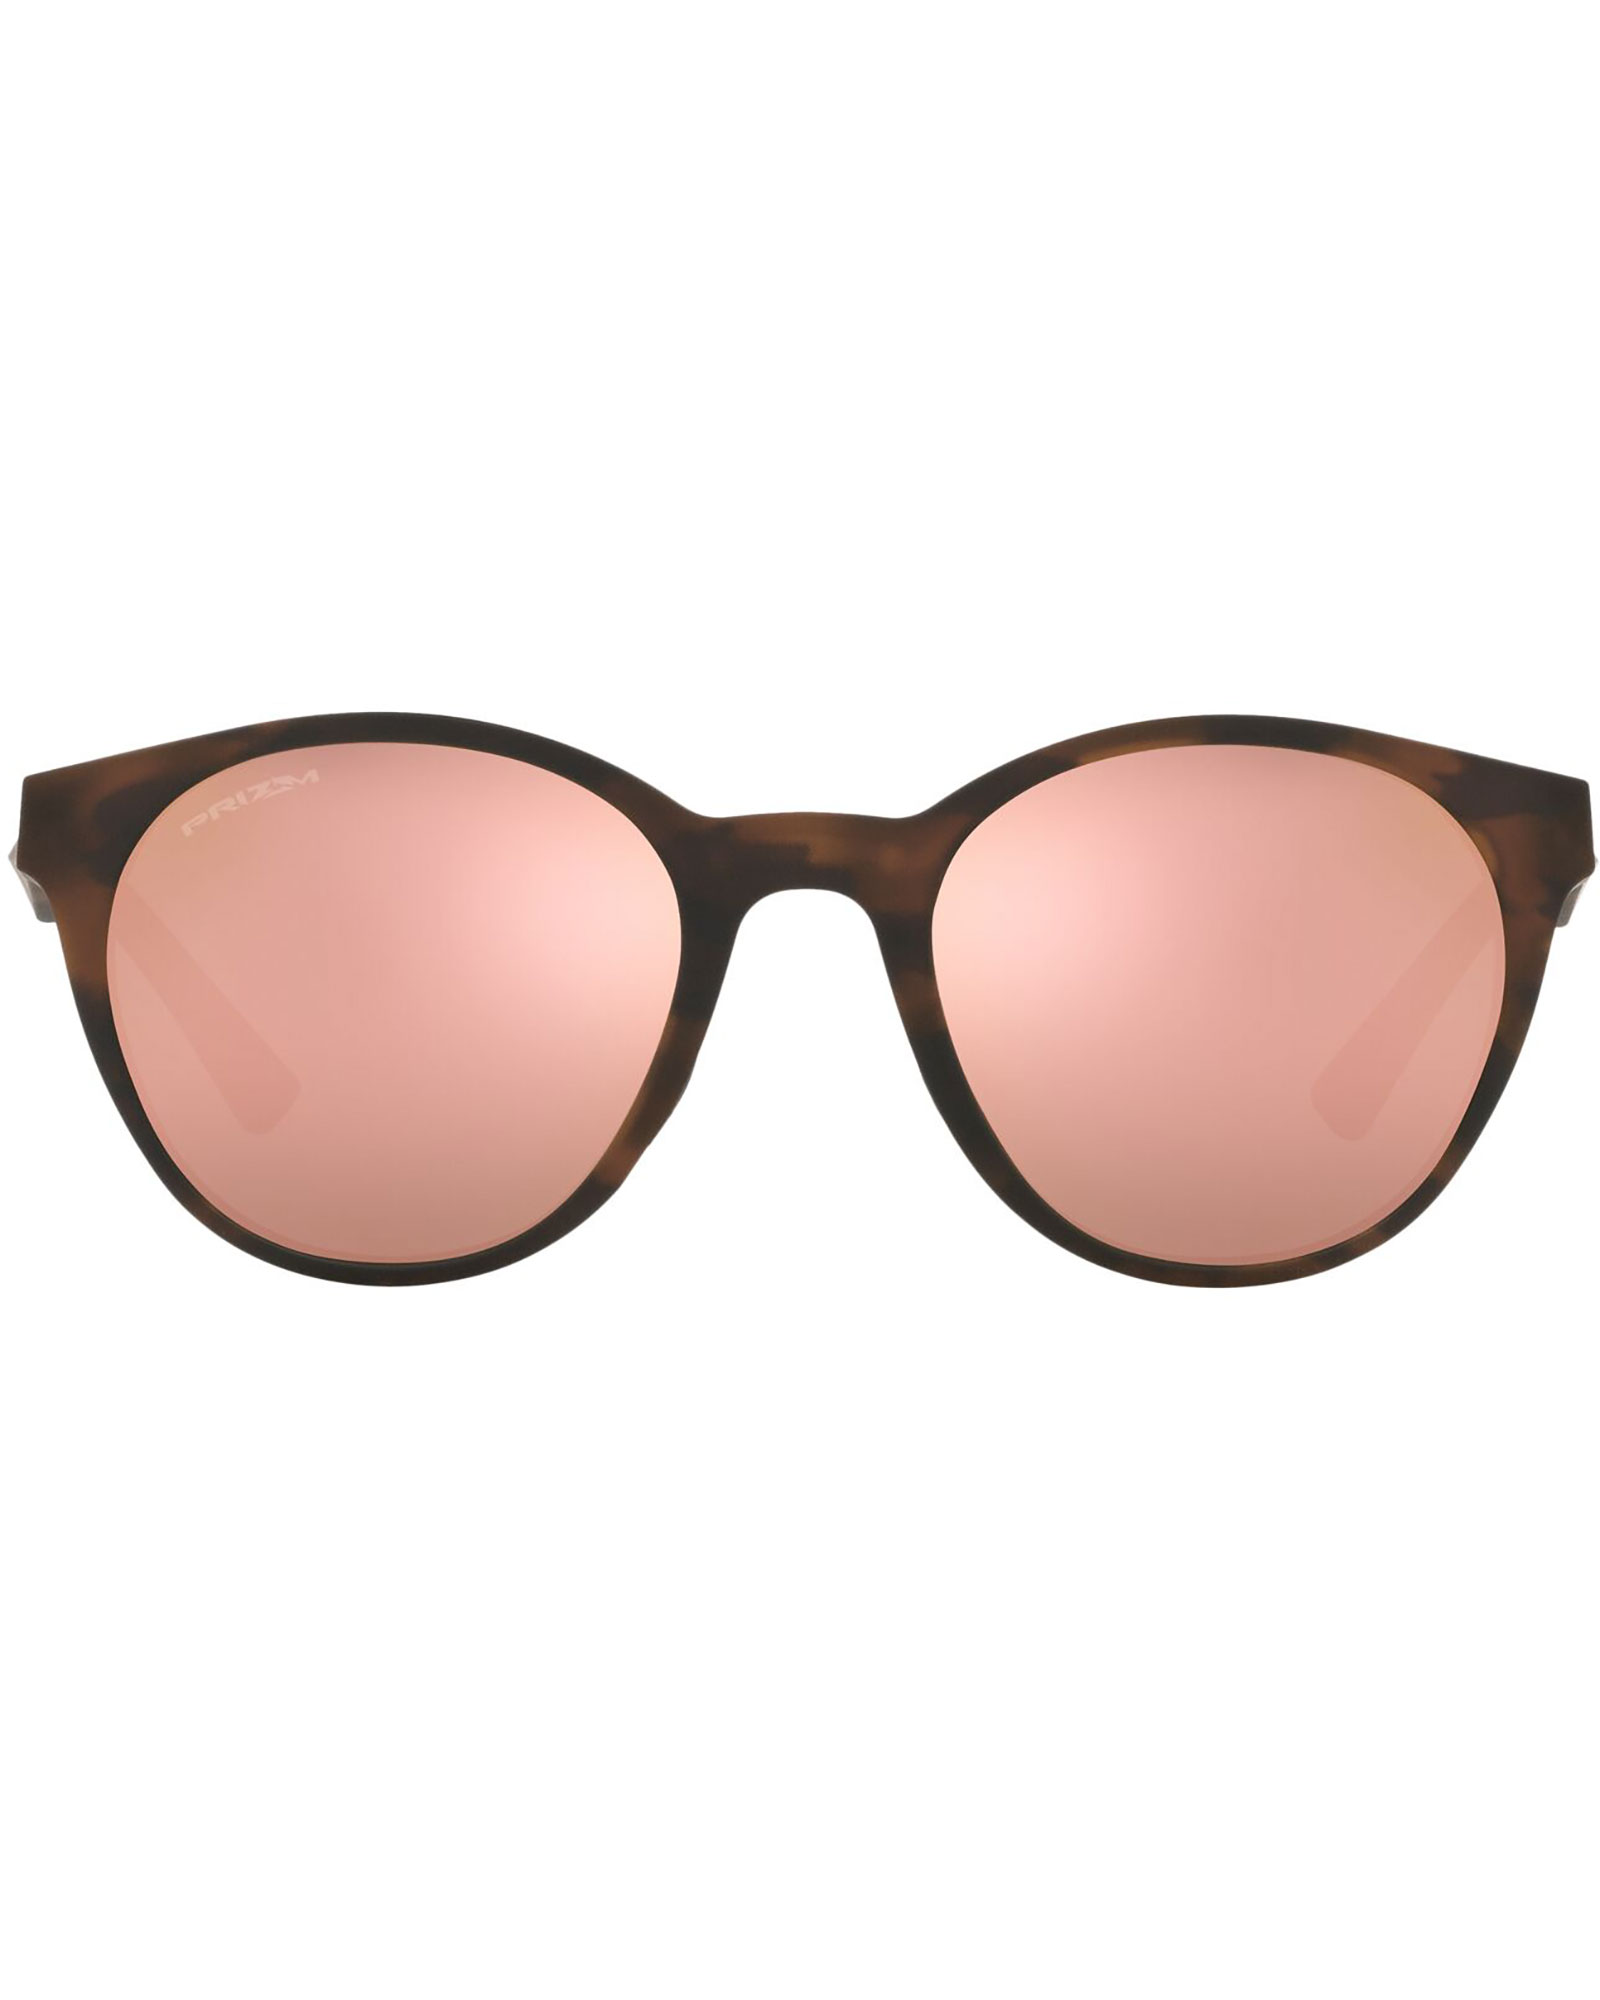 Oakley Spindrift Prizm Rose Gold Sunglasses - Matte Brown Tortoise